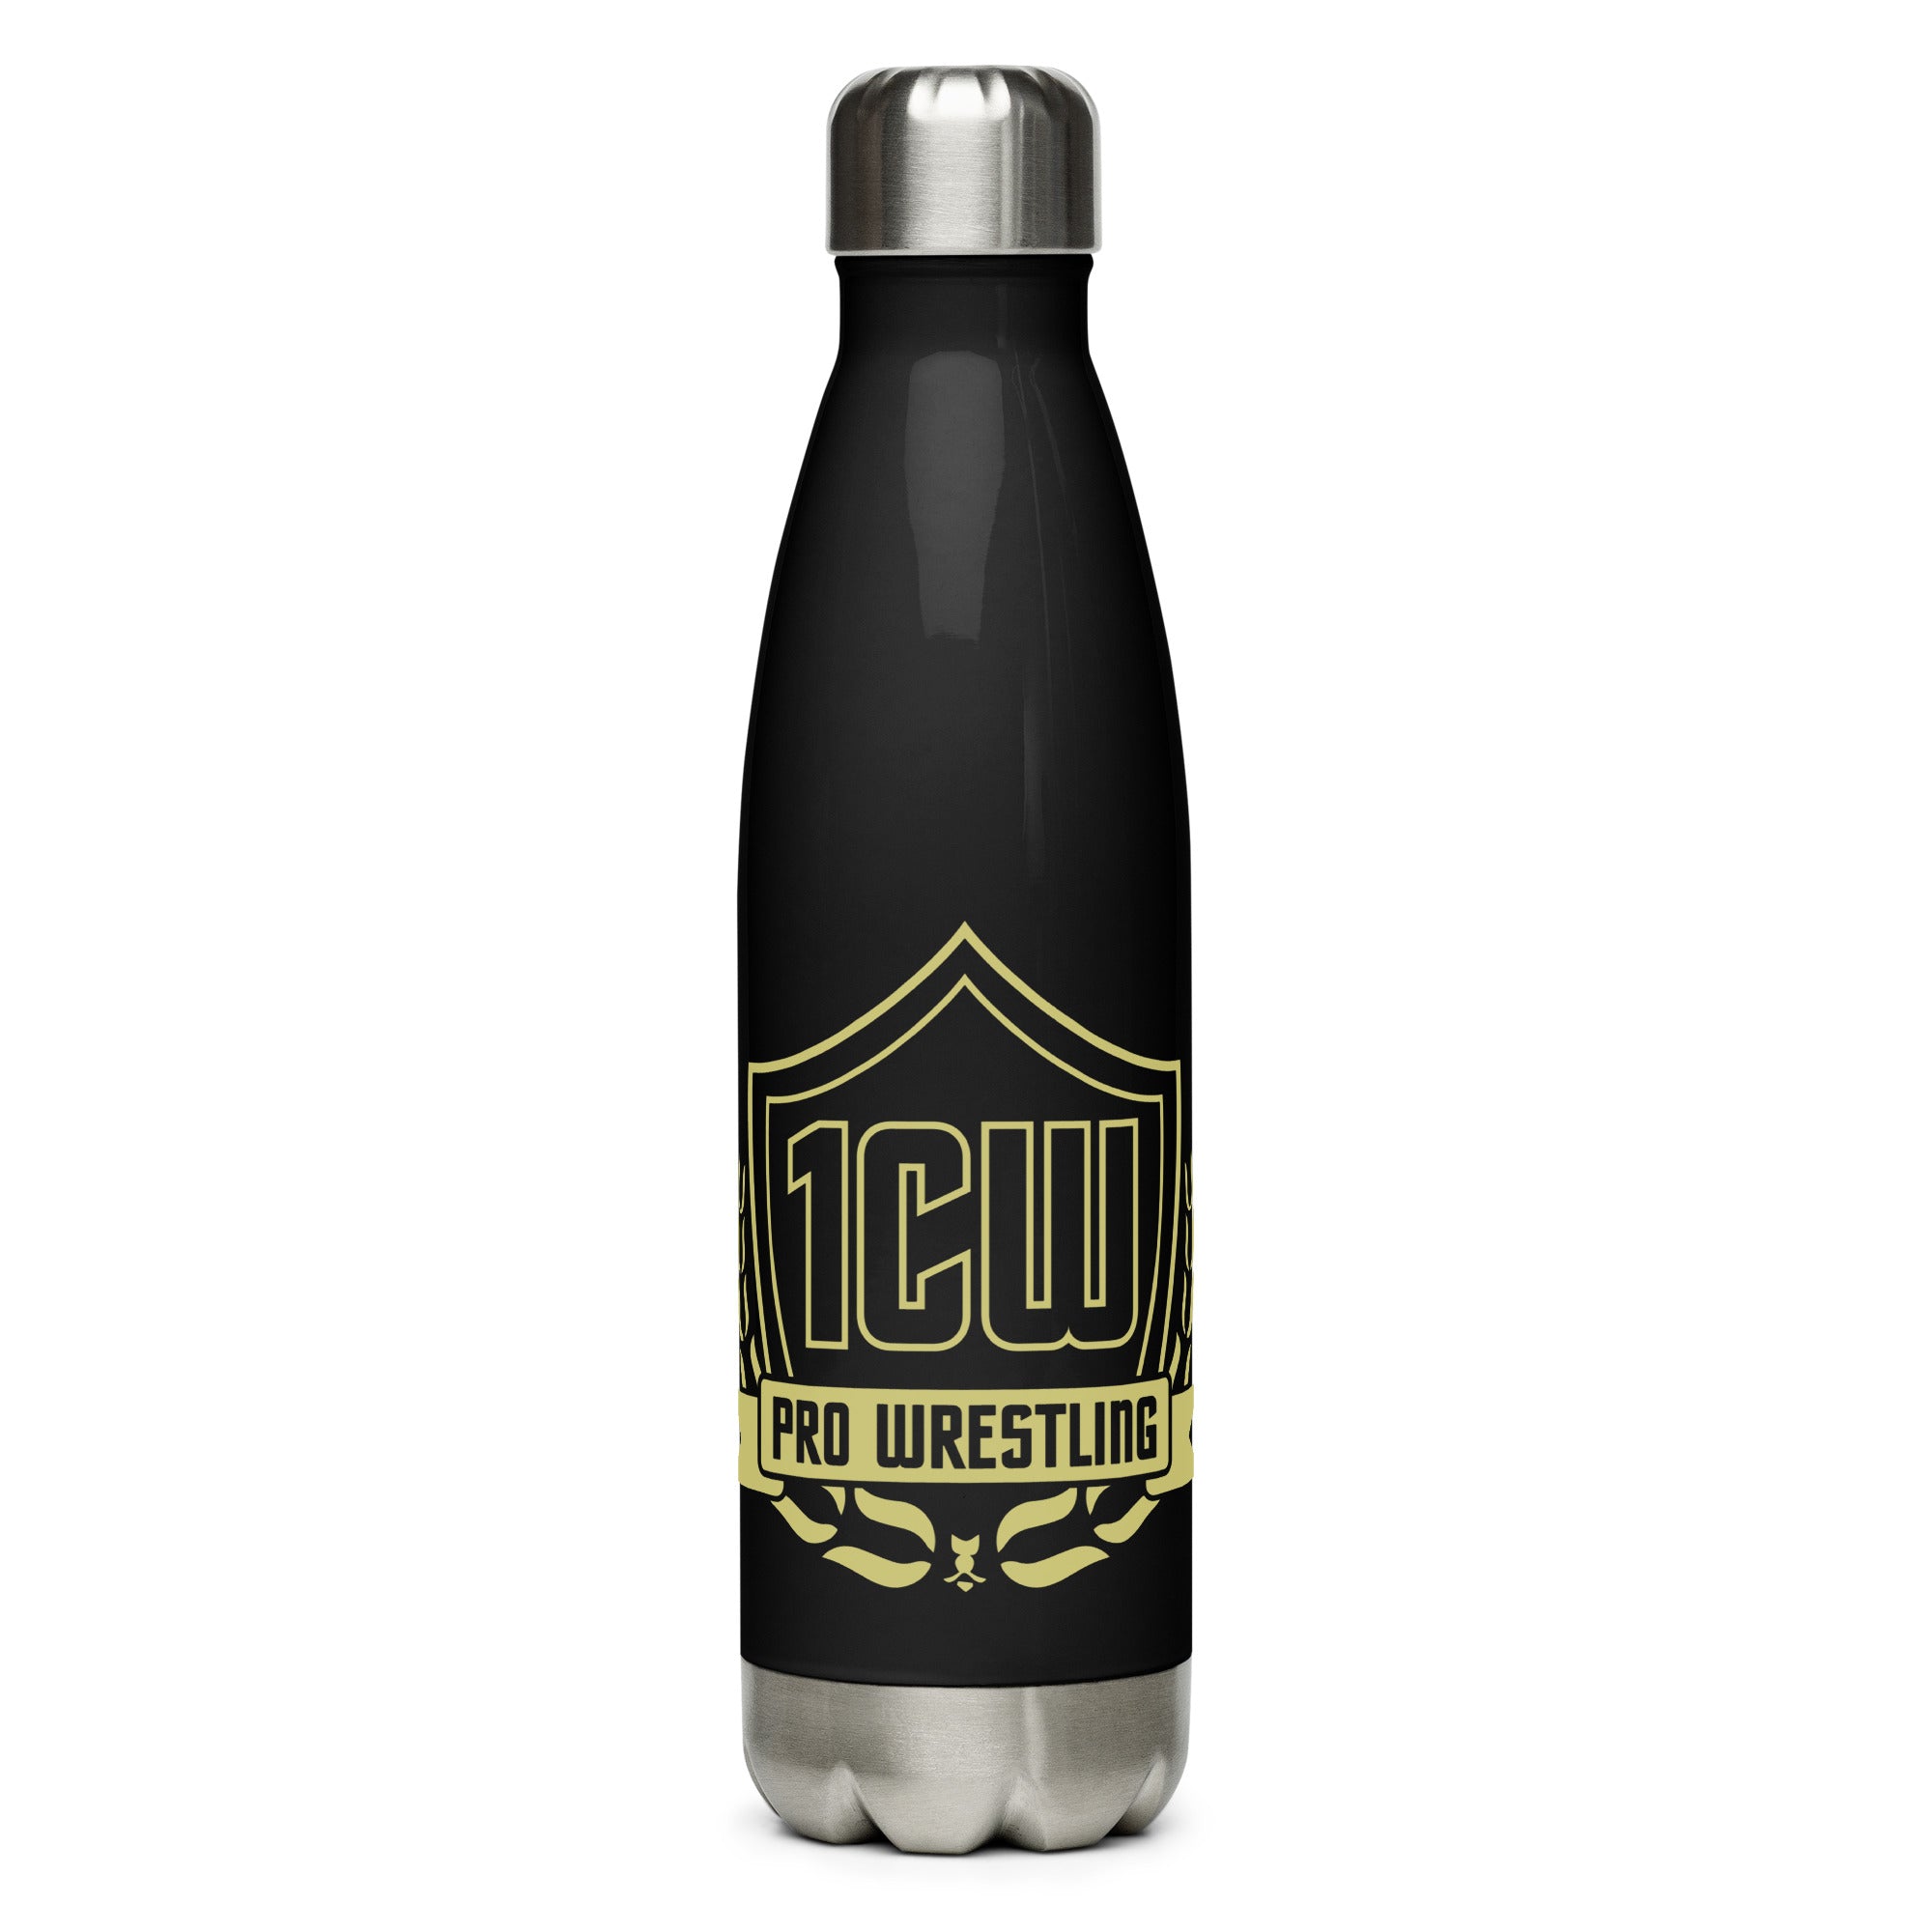 1CW Pro Wrestling Stainless Steel Water Bottle